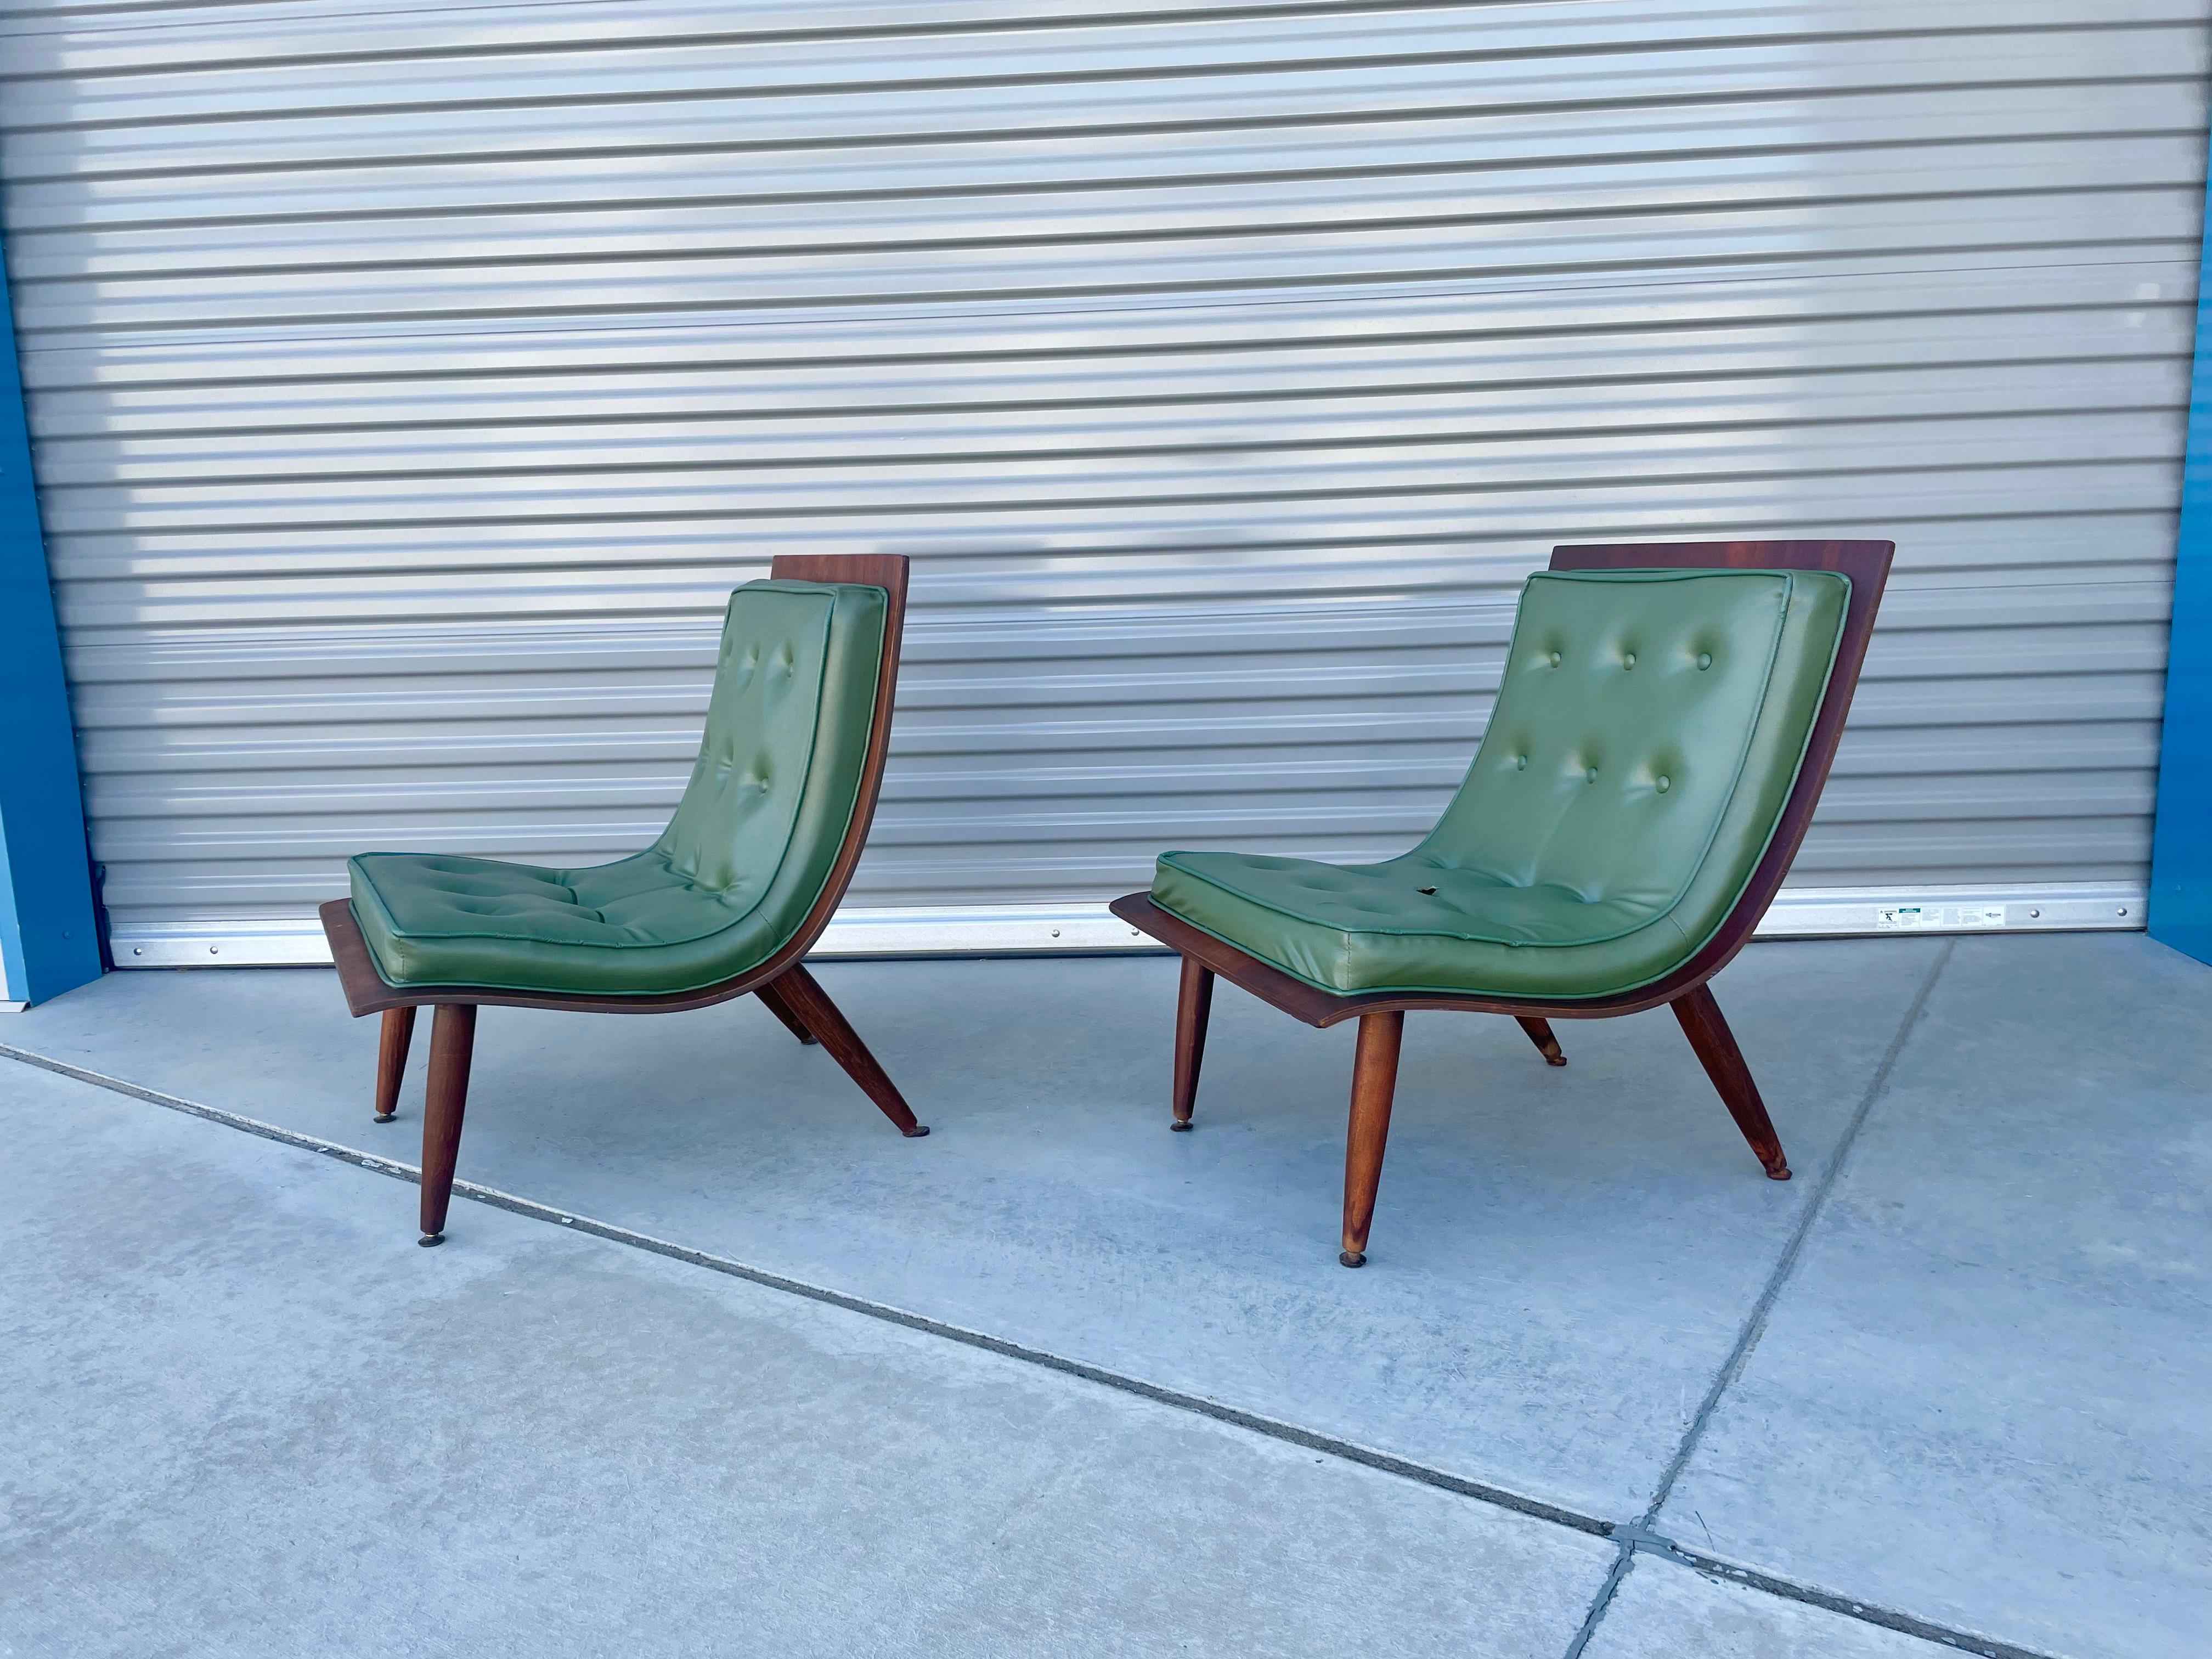 Fauteuils de salon scoop vintage fabriqués par Carter Brothers, vers les années 1950. Cette paire de chaises scoop du milieu du siècle présente un design épuré recouvert de cuir vert touffeté avec un dossier en noyer. Les chaises ont également un